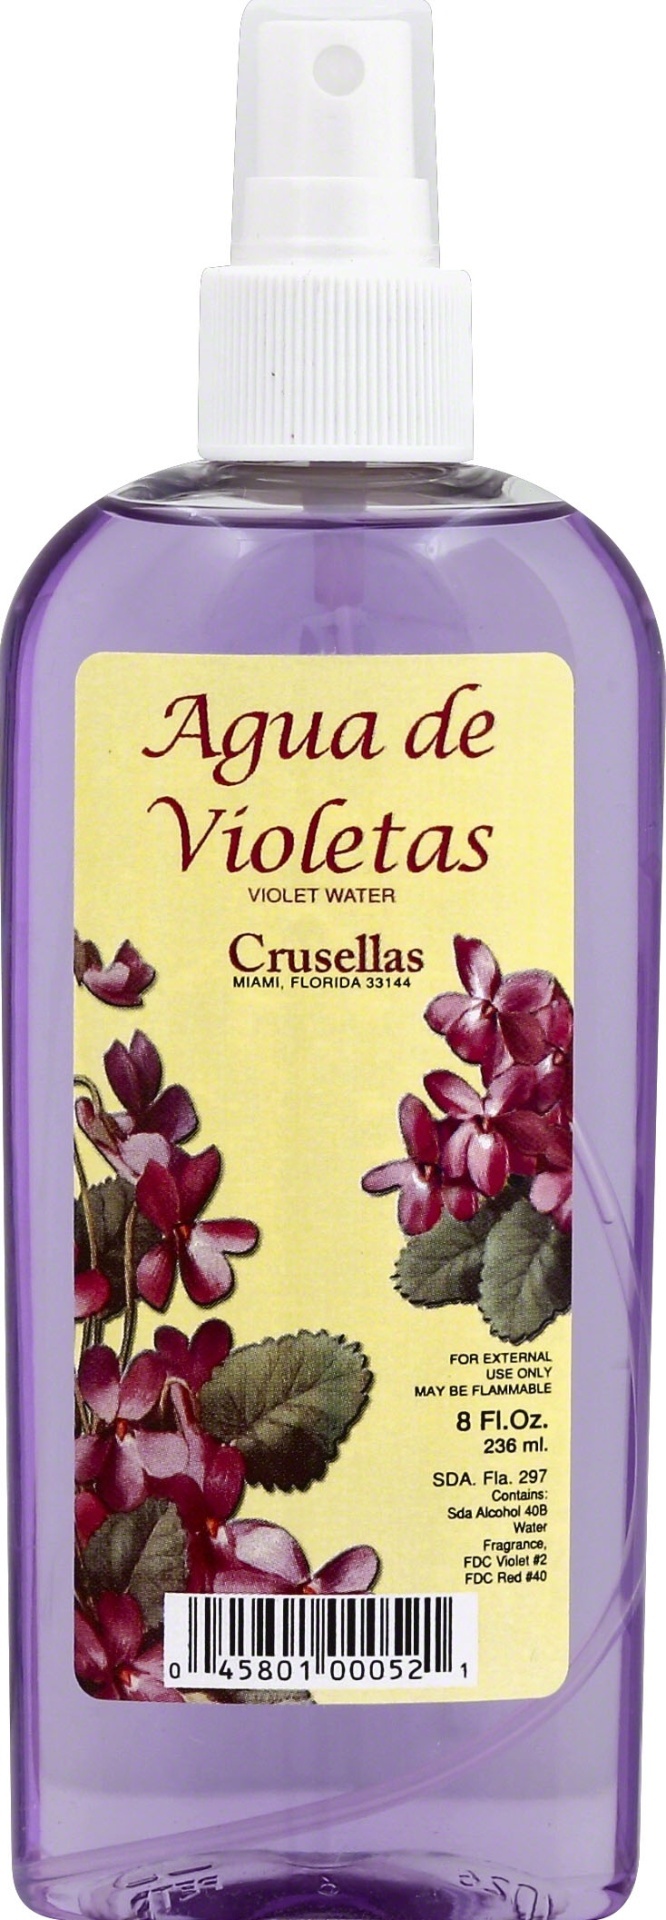 slide 1 of 1, Crusellas Aguas de Violetas, 8 fl oz